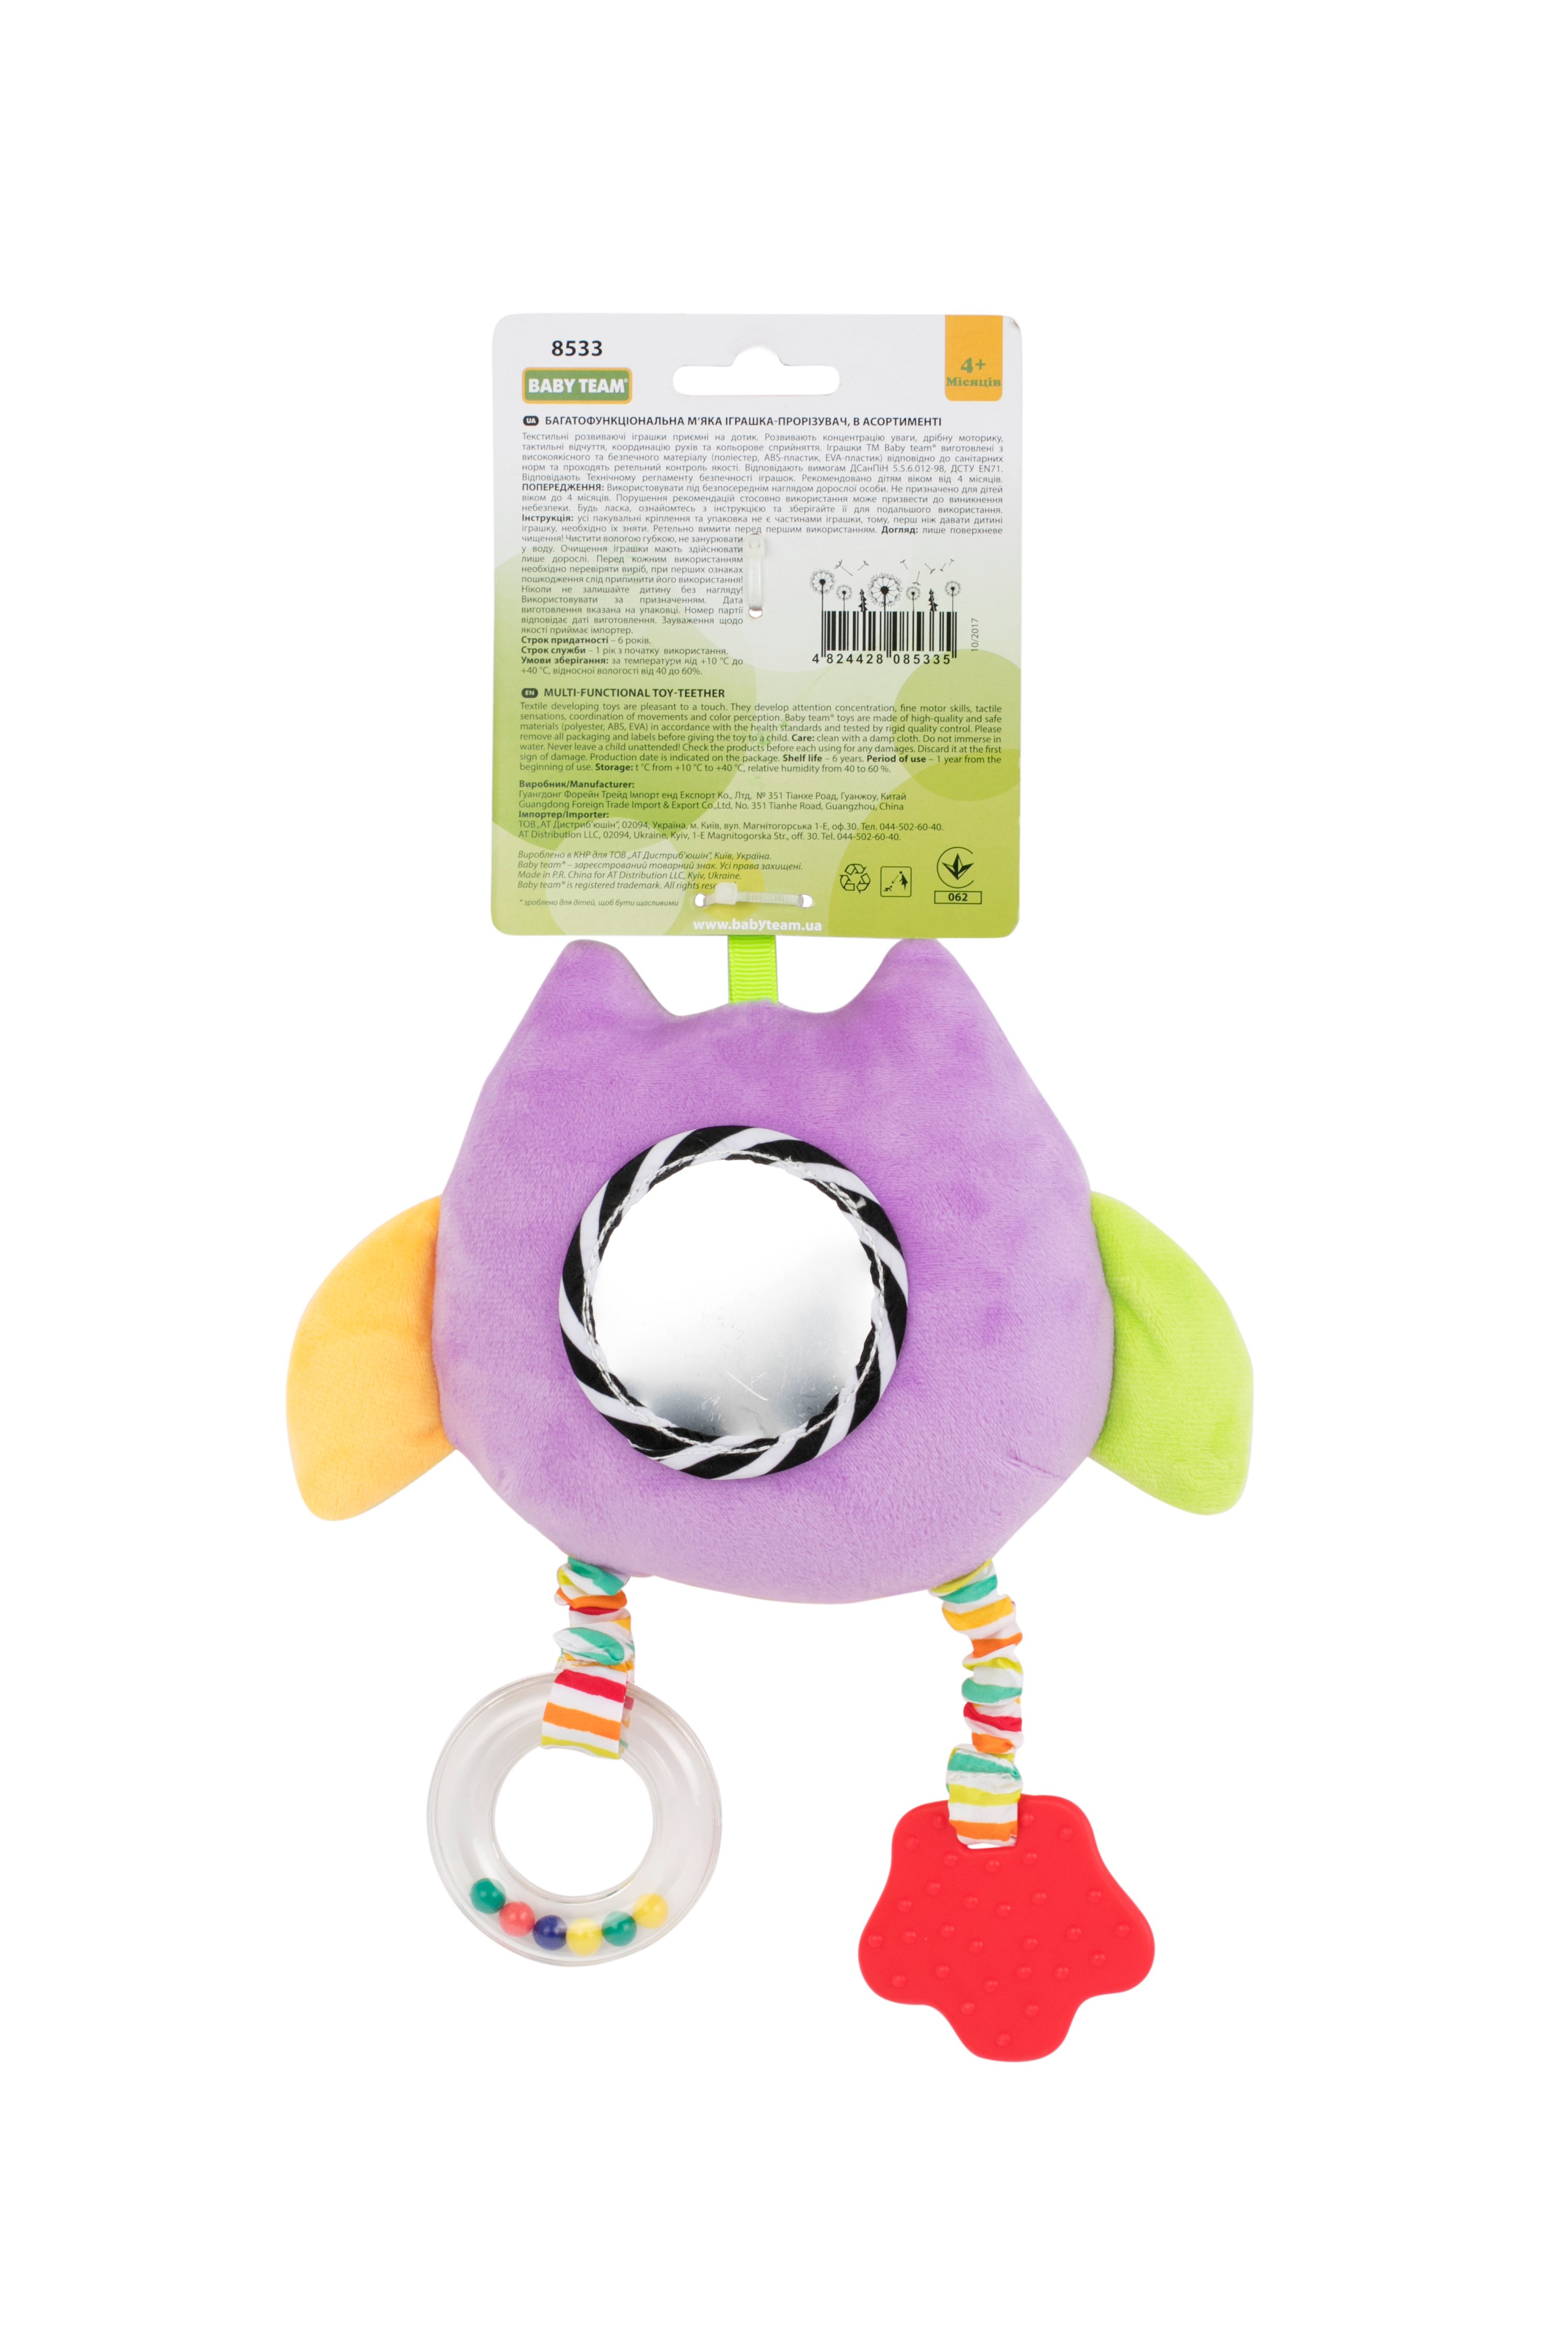 Іграшка-підвіска Baby Team Сова, фіолетовий (8533_Сова_фиолетовая) - фото 2